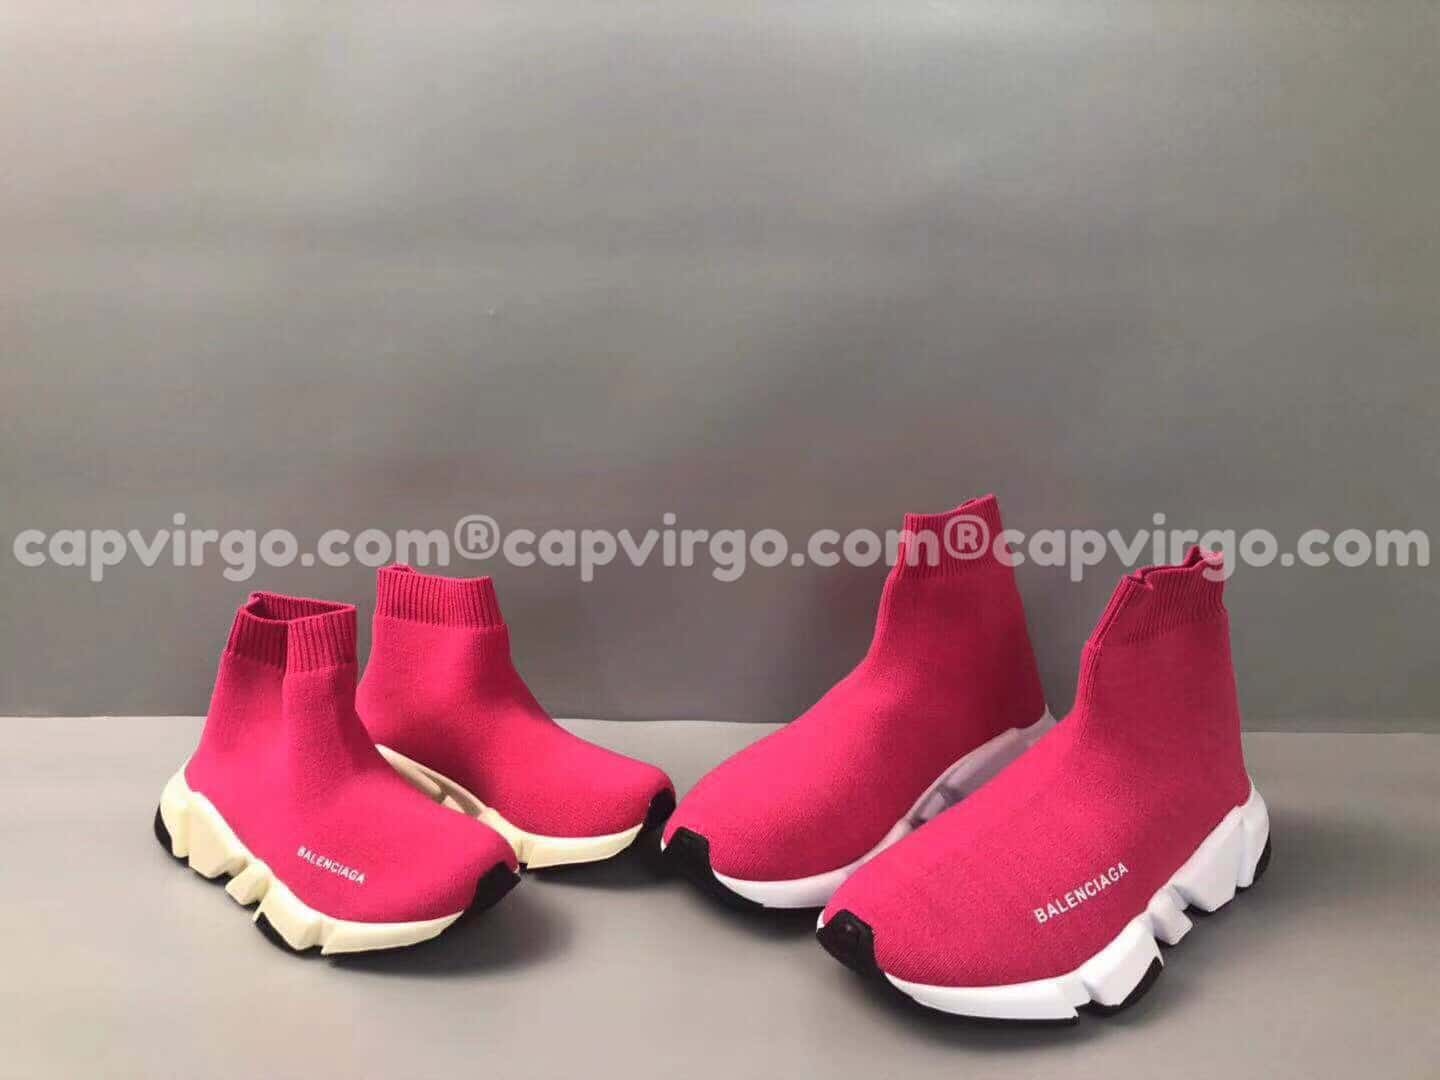 Giày Balenciaga cao cổ màu hồng đế trắng đen